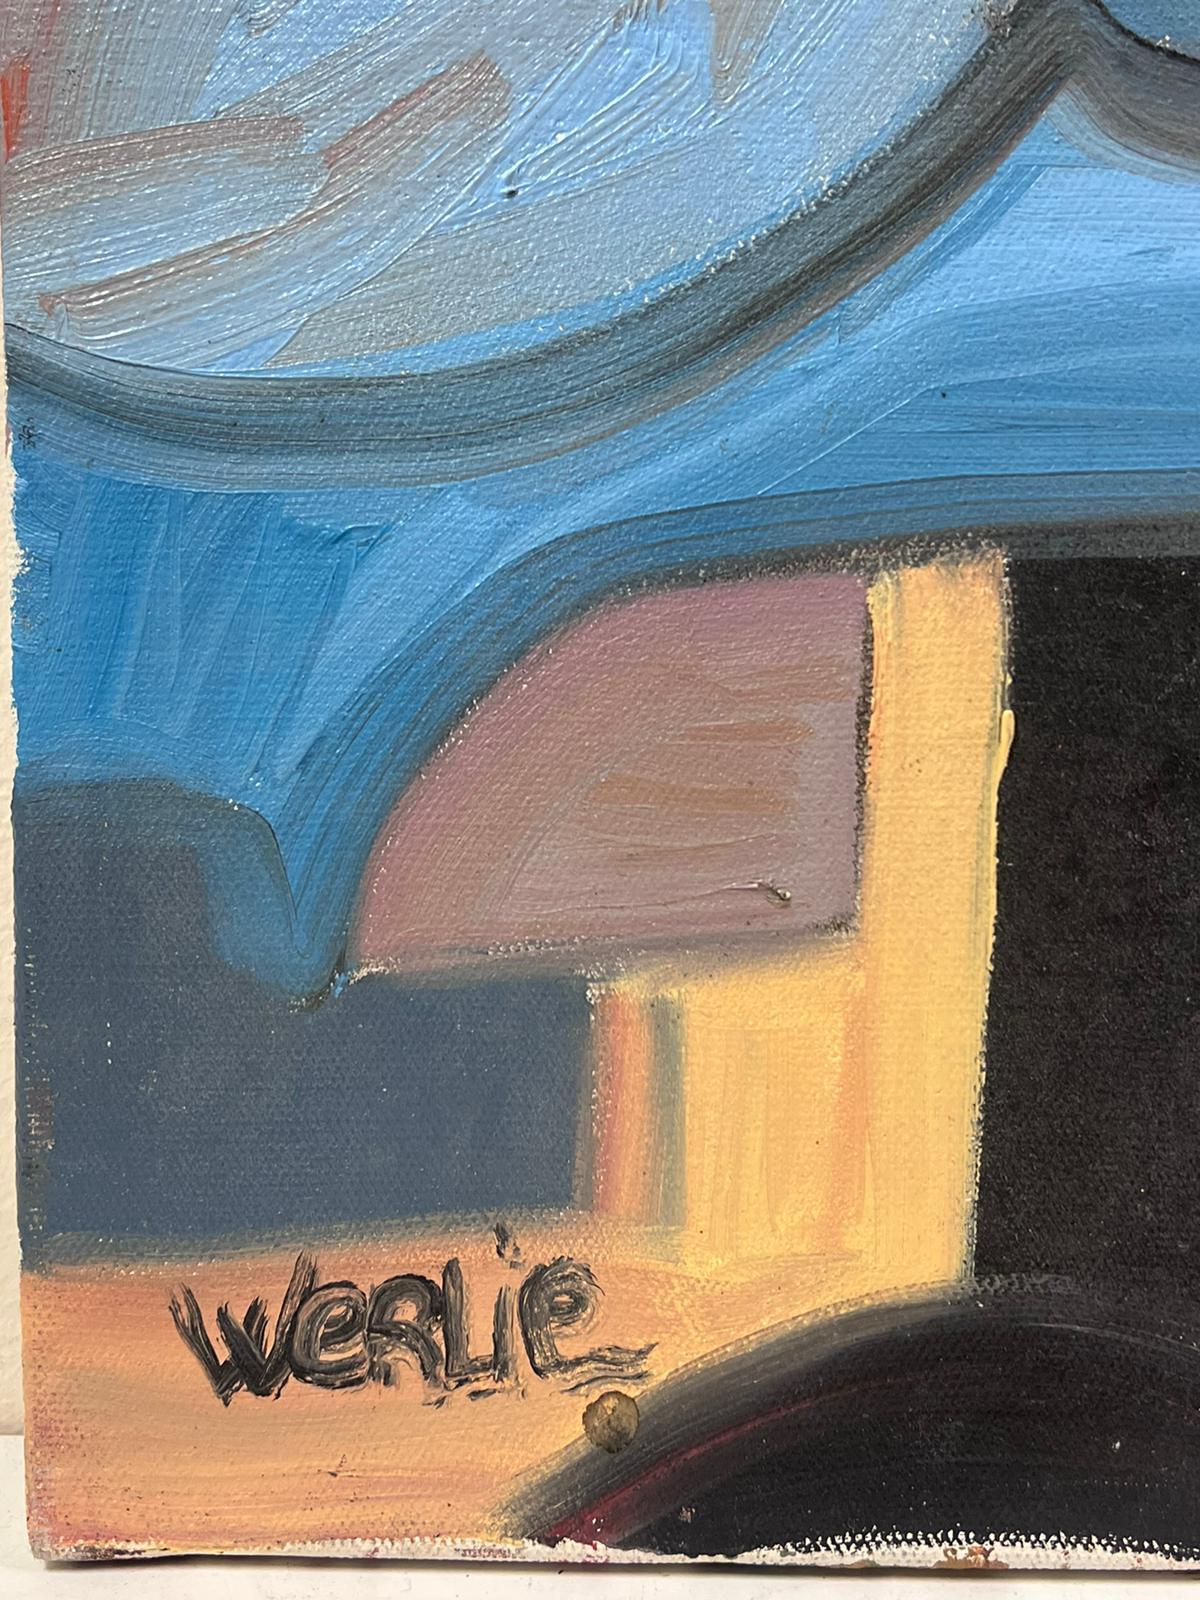 Abstrakte Kunst, Picasso-Stil, mehrfarbig, Original Ölgemälde, signiert 
Von der französischen Künstlerin Beatrice Werlie, Anfang des 21.
Signiert von der Künstlerin
Ölgemälde auf Leinwand, ungerahmt
Leinwandgröße: 32 x 21,5 Zoll

Sensationelles